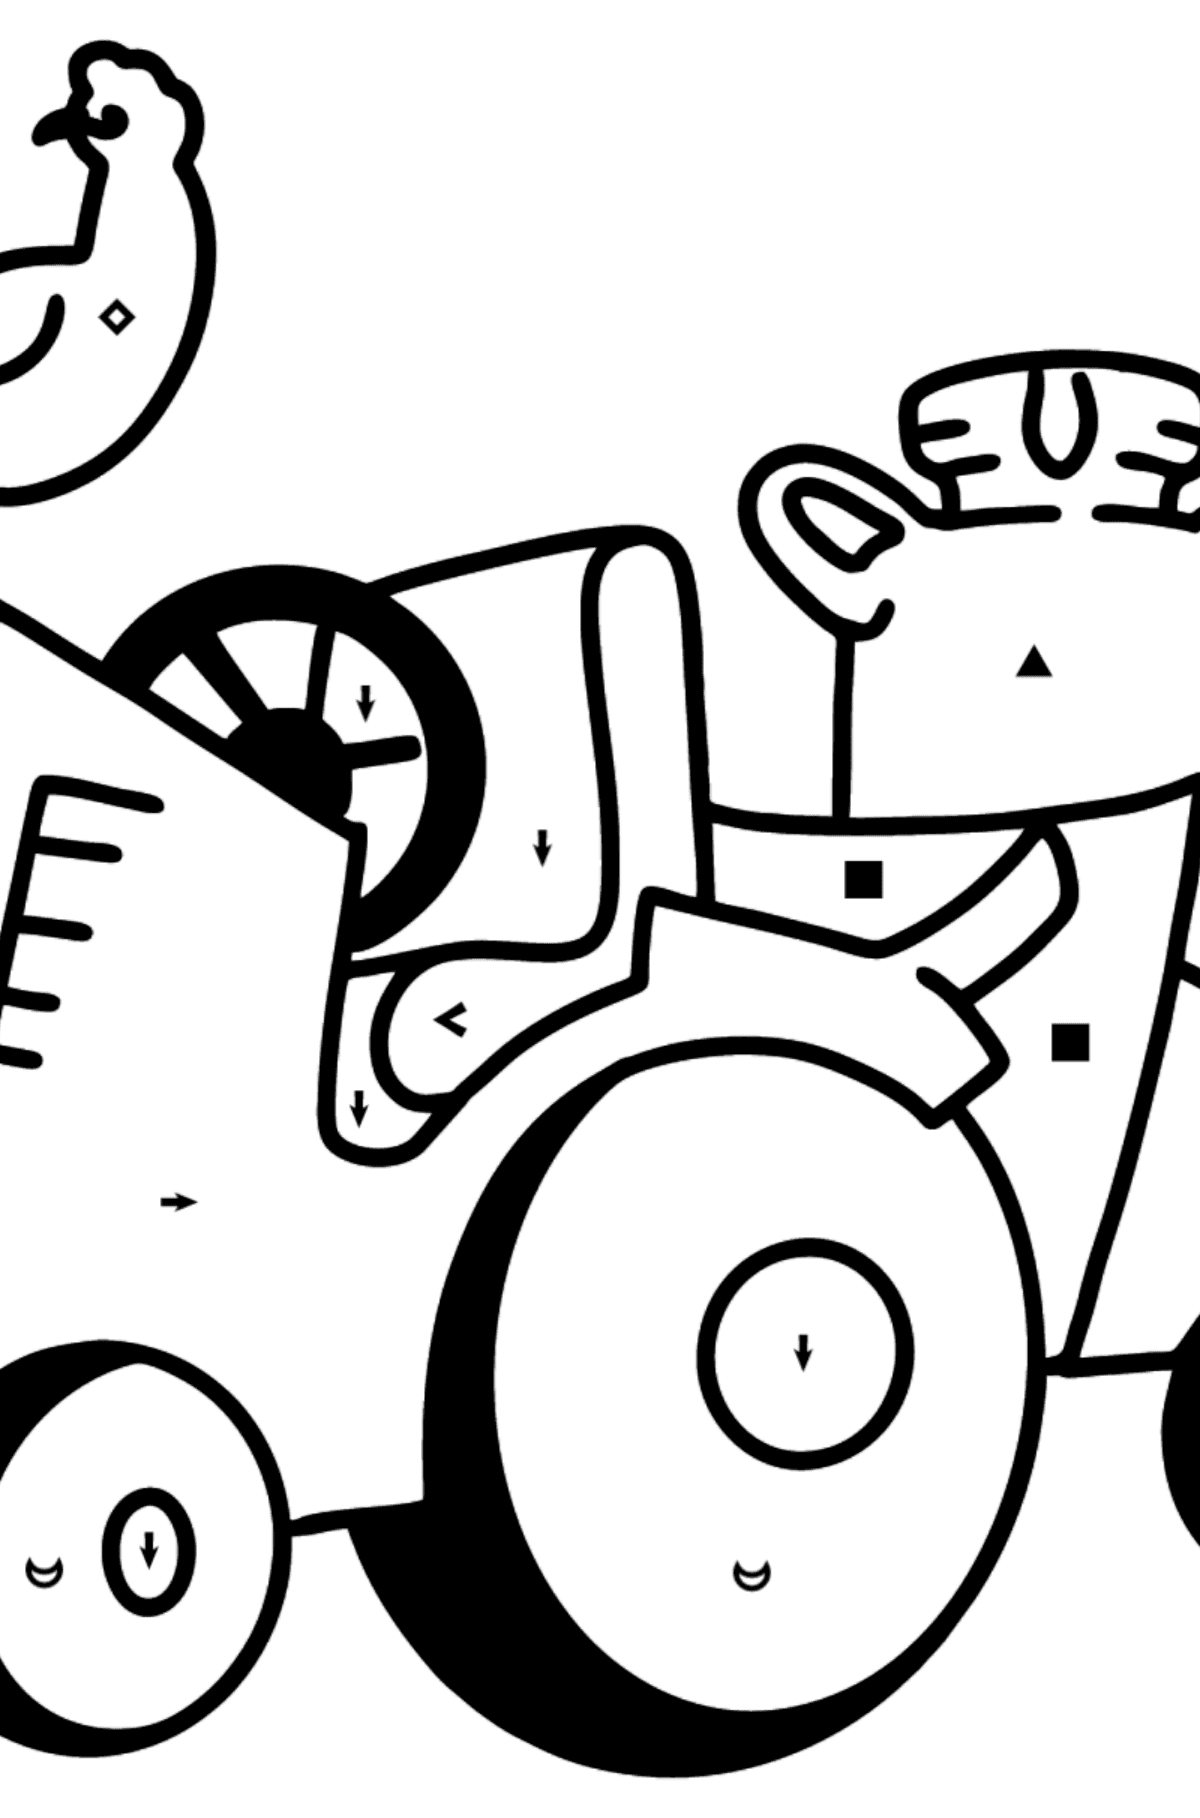 Coloriage - Tracteur dans une ferme - Coloriage par Symboles pour les Enfants